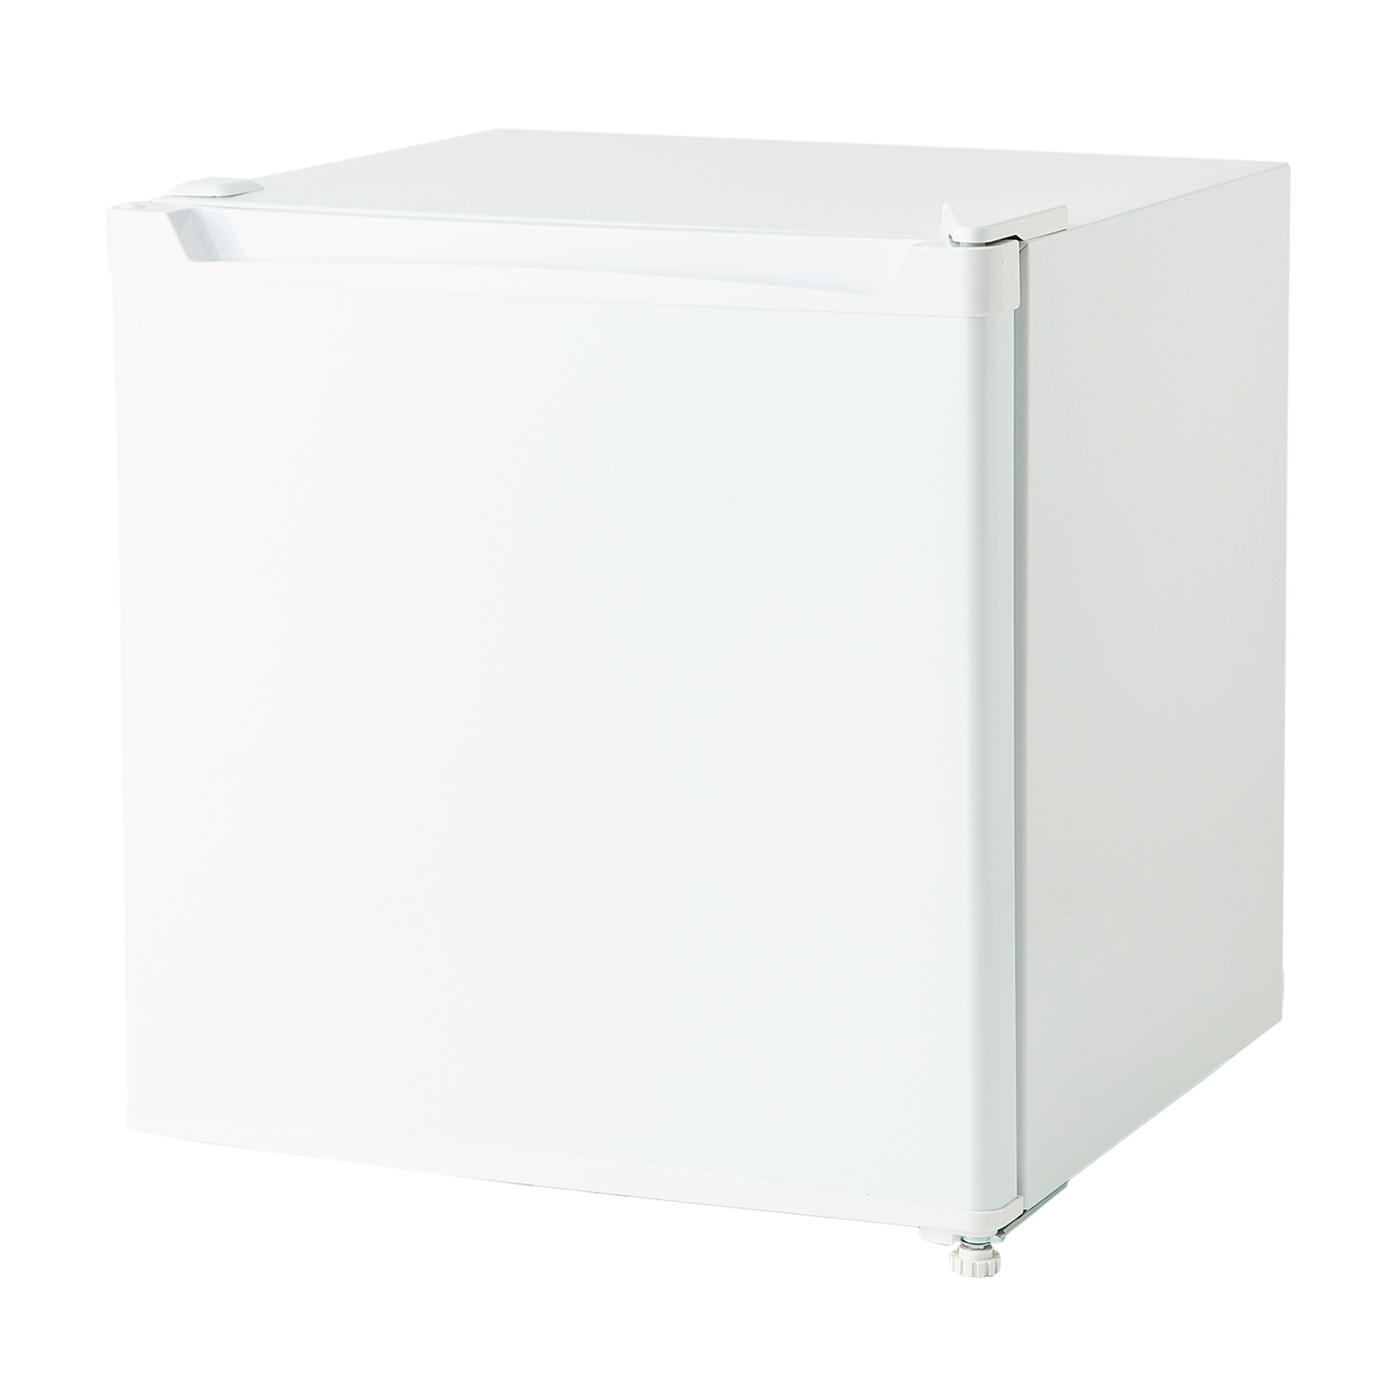 アイリスオーヤマ 1ドア冷蔵庫 46L PRC-B051D-Wを全15商品と比較！口コミや評判を実際に使ってレビューしました！